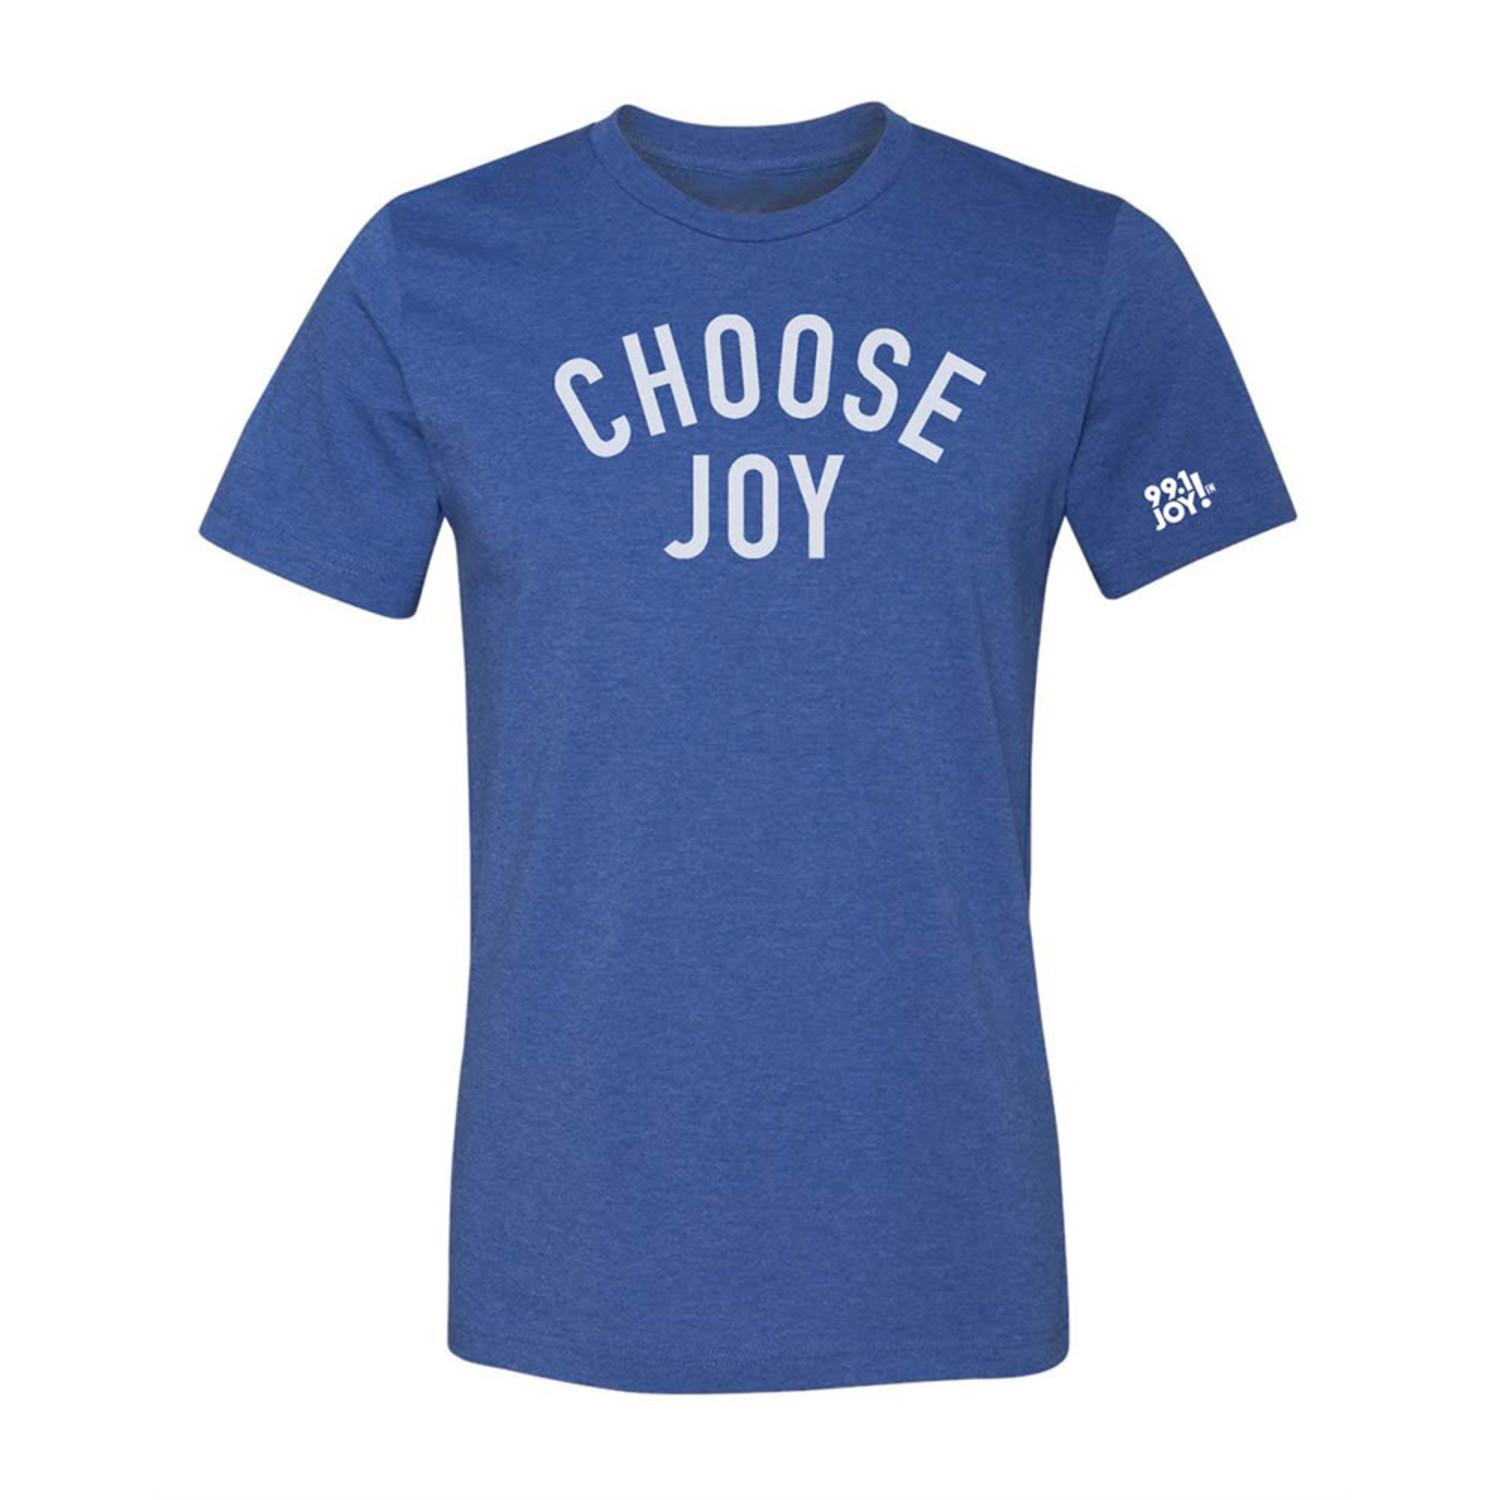 Choose JOY - The JOY Store